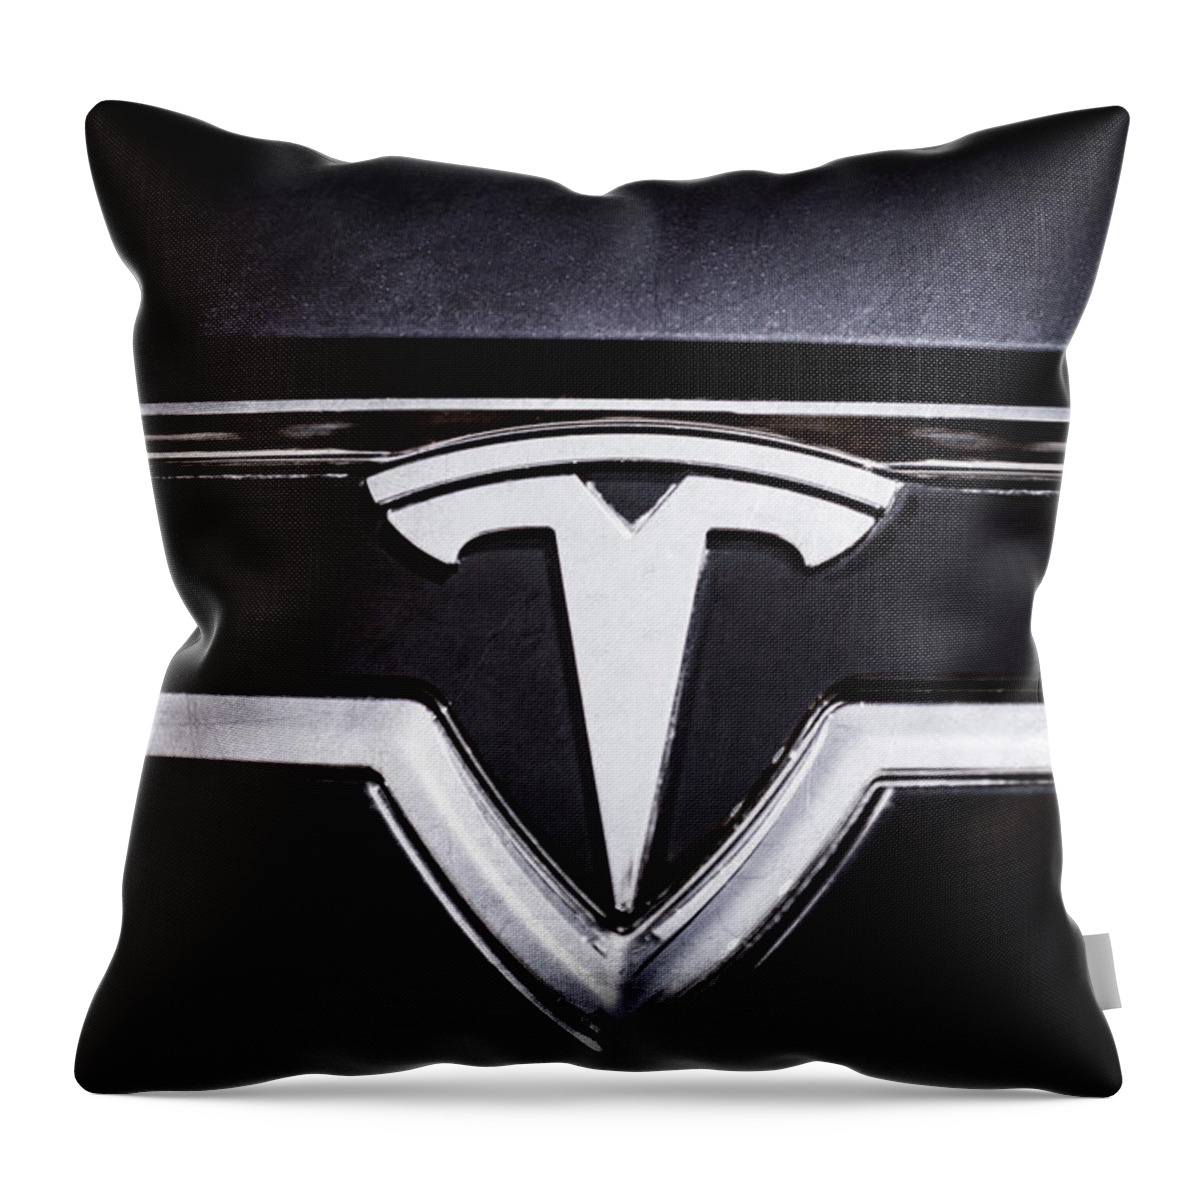 2013 Tesla Model S Emblem Throw Pillow featuring the photograph 2013 Tesla Model S Emblem -0122ac1 by Jill Reger